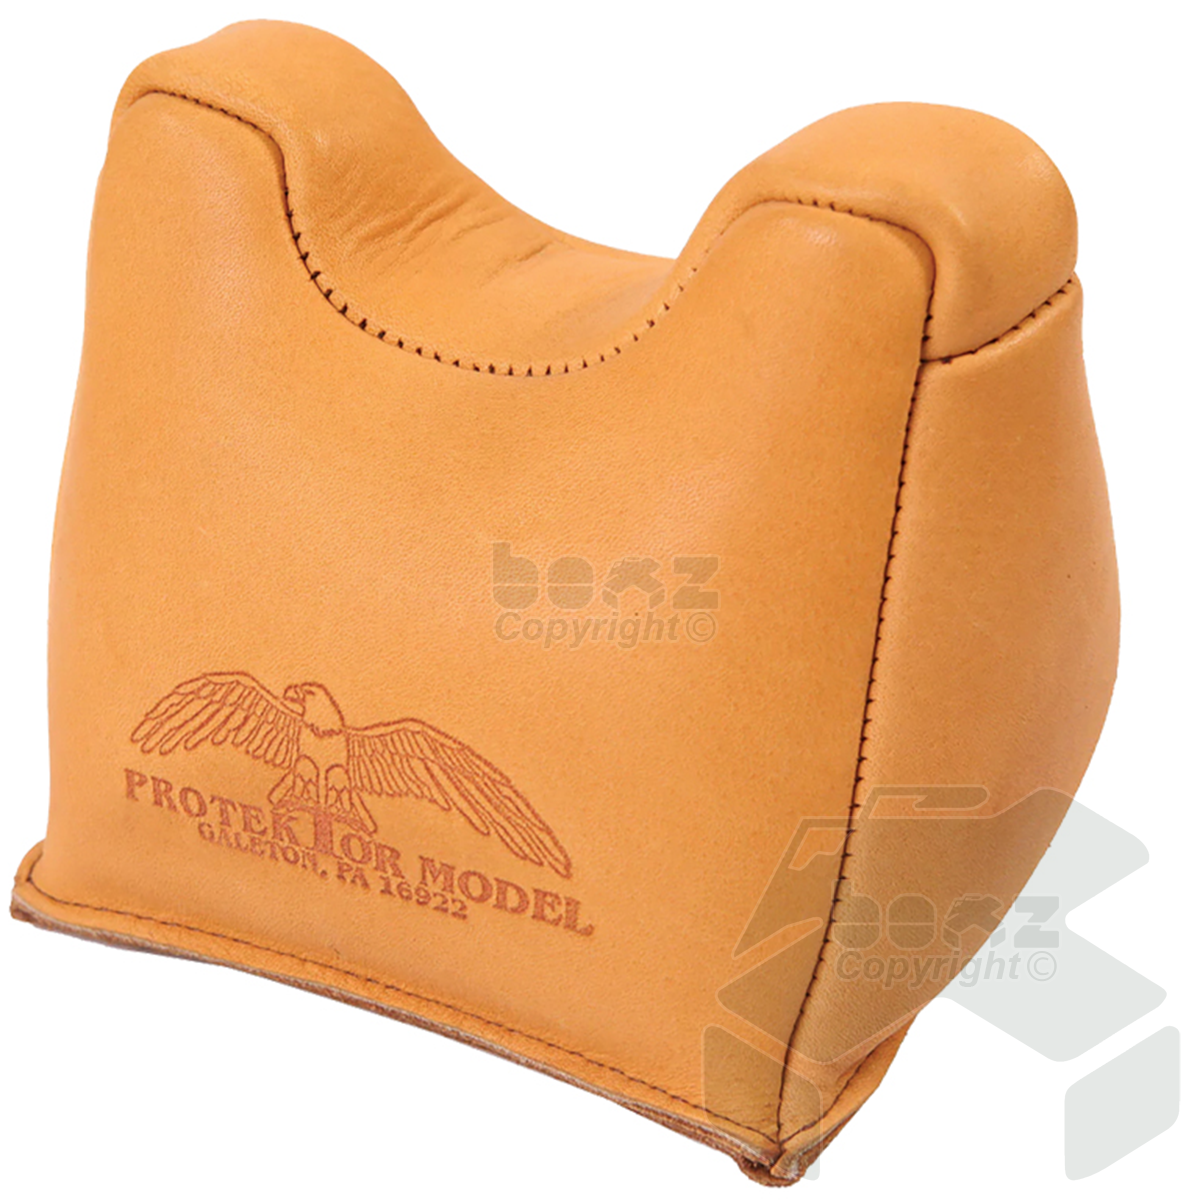 Protektor Front Bag Standard Unfilled